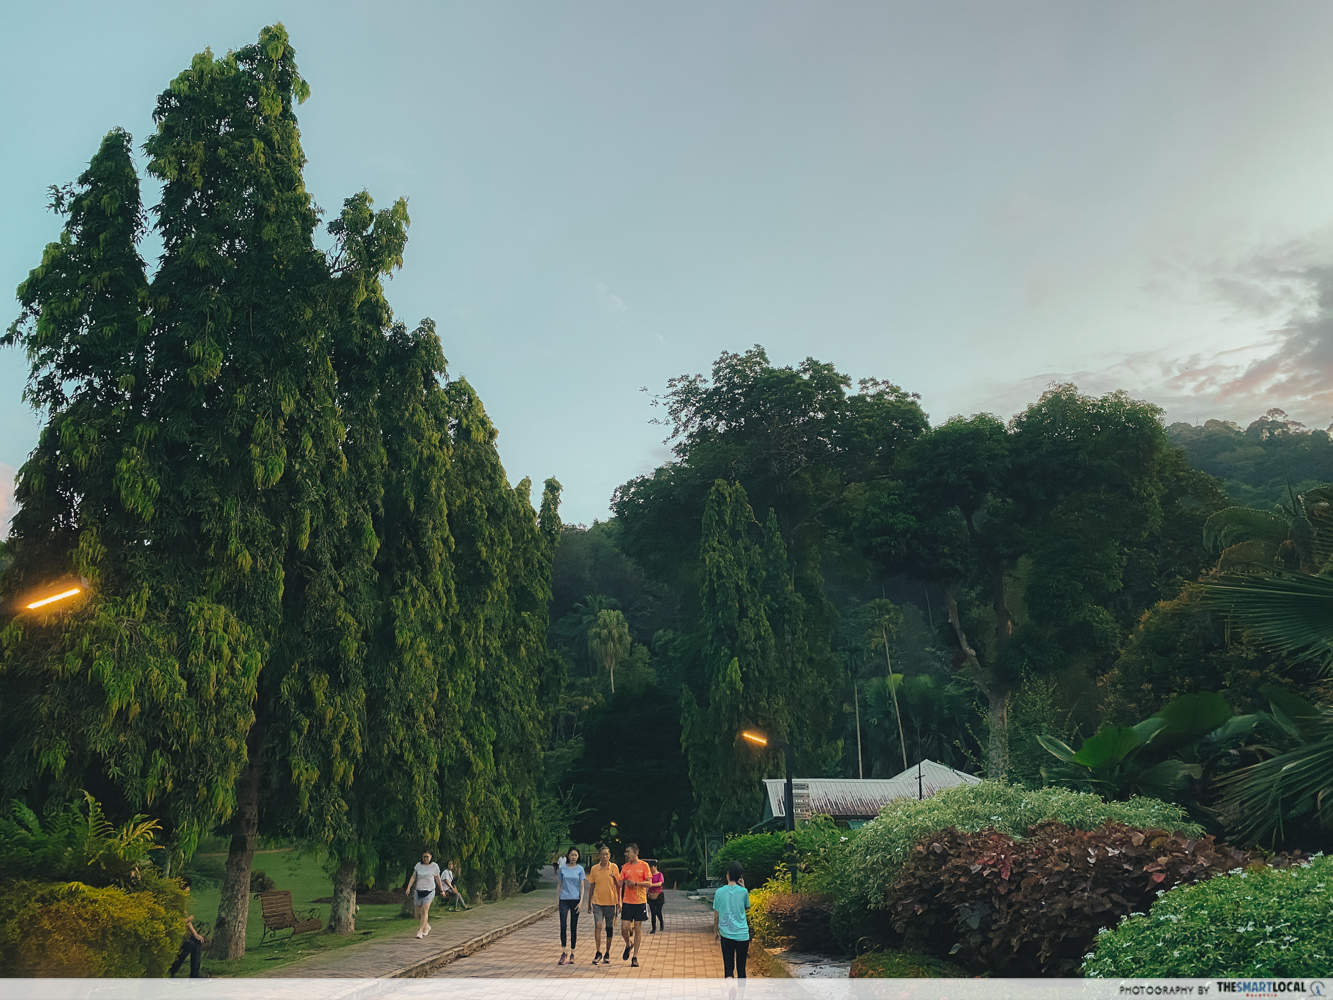 Penang Botanic Gardens - jogging